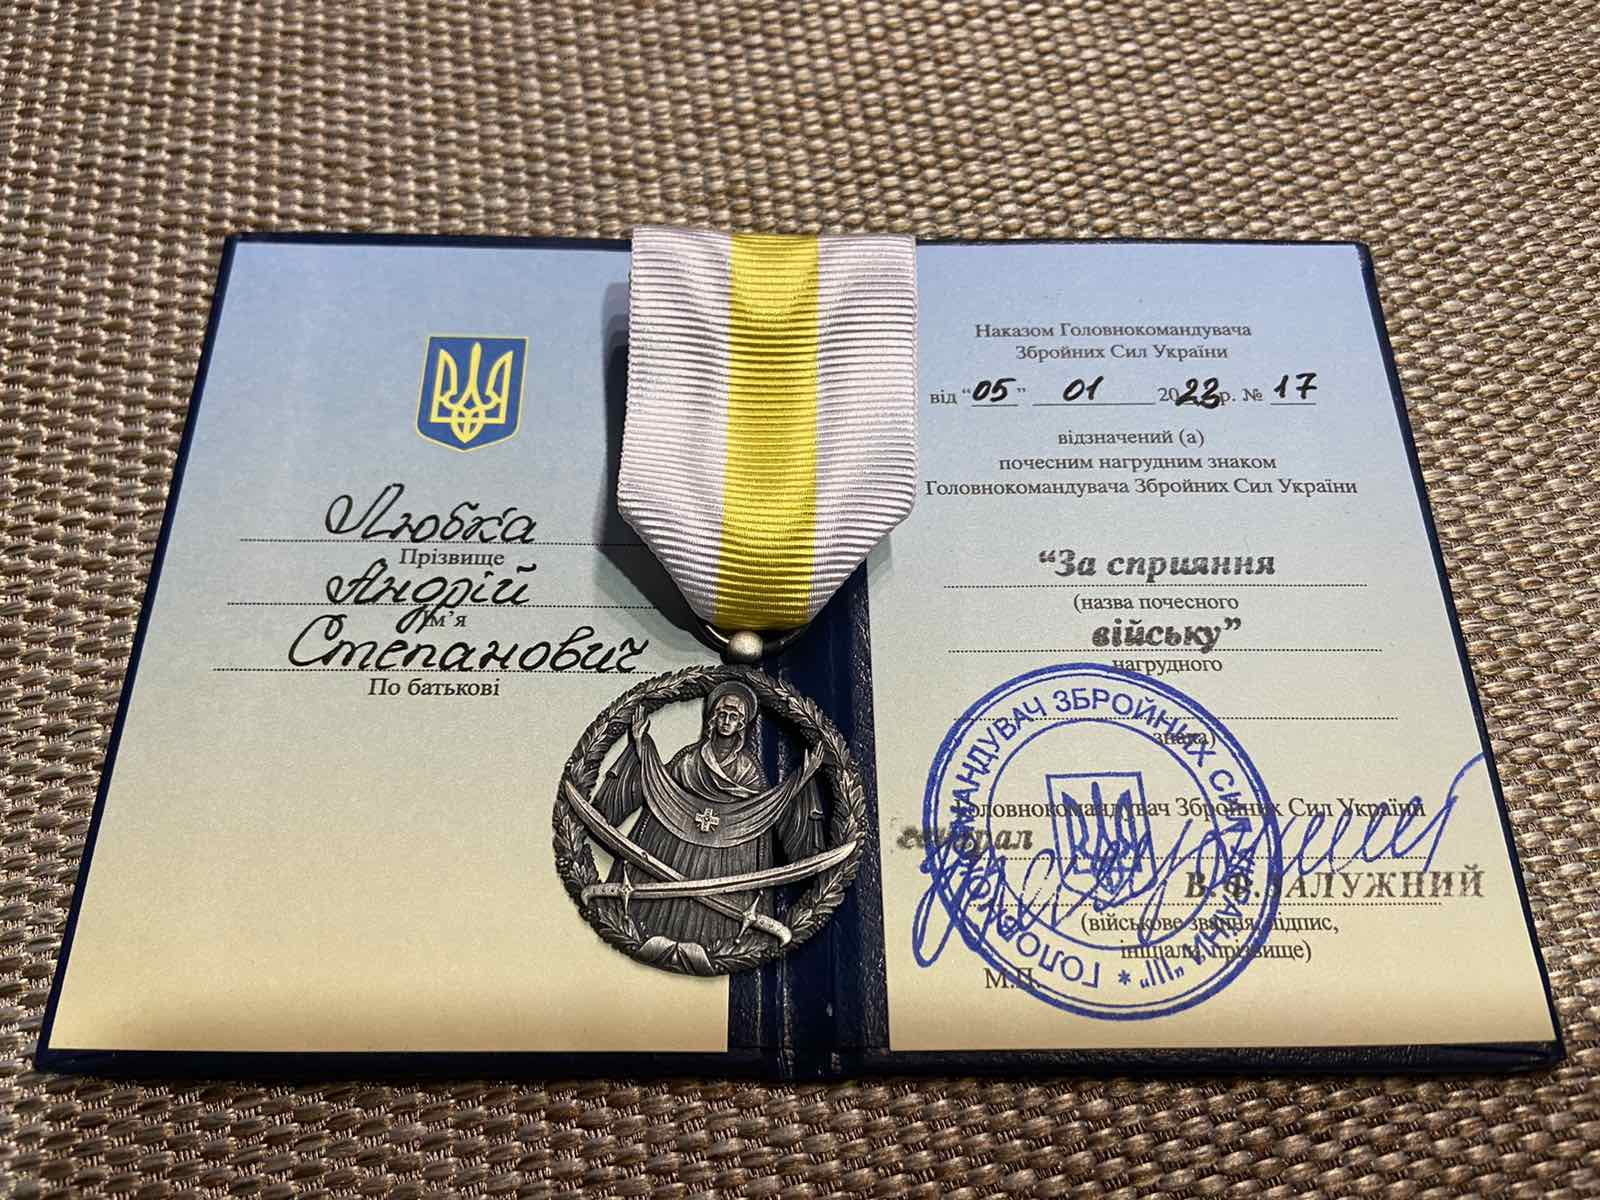 Закарпатський письменник і волонтер Андрій Любка отримав нагороду за сприяння війську від Головнокомандувача ЗСУ